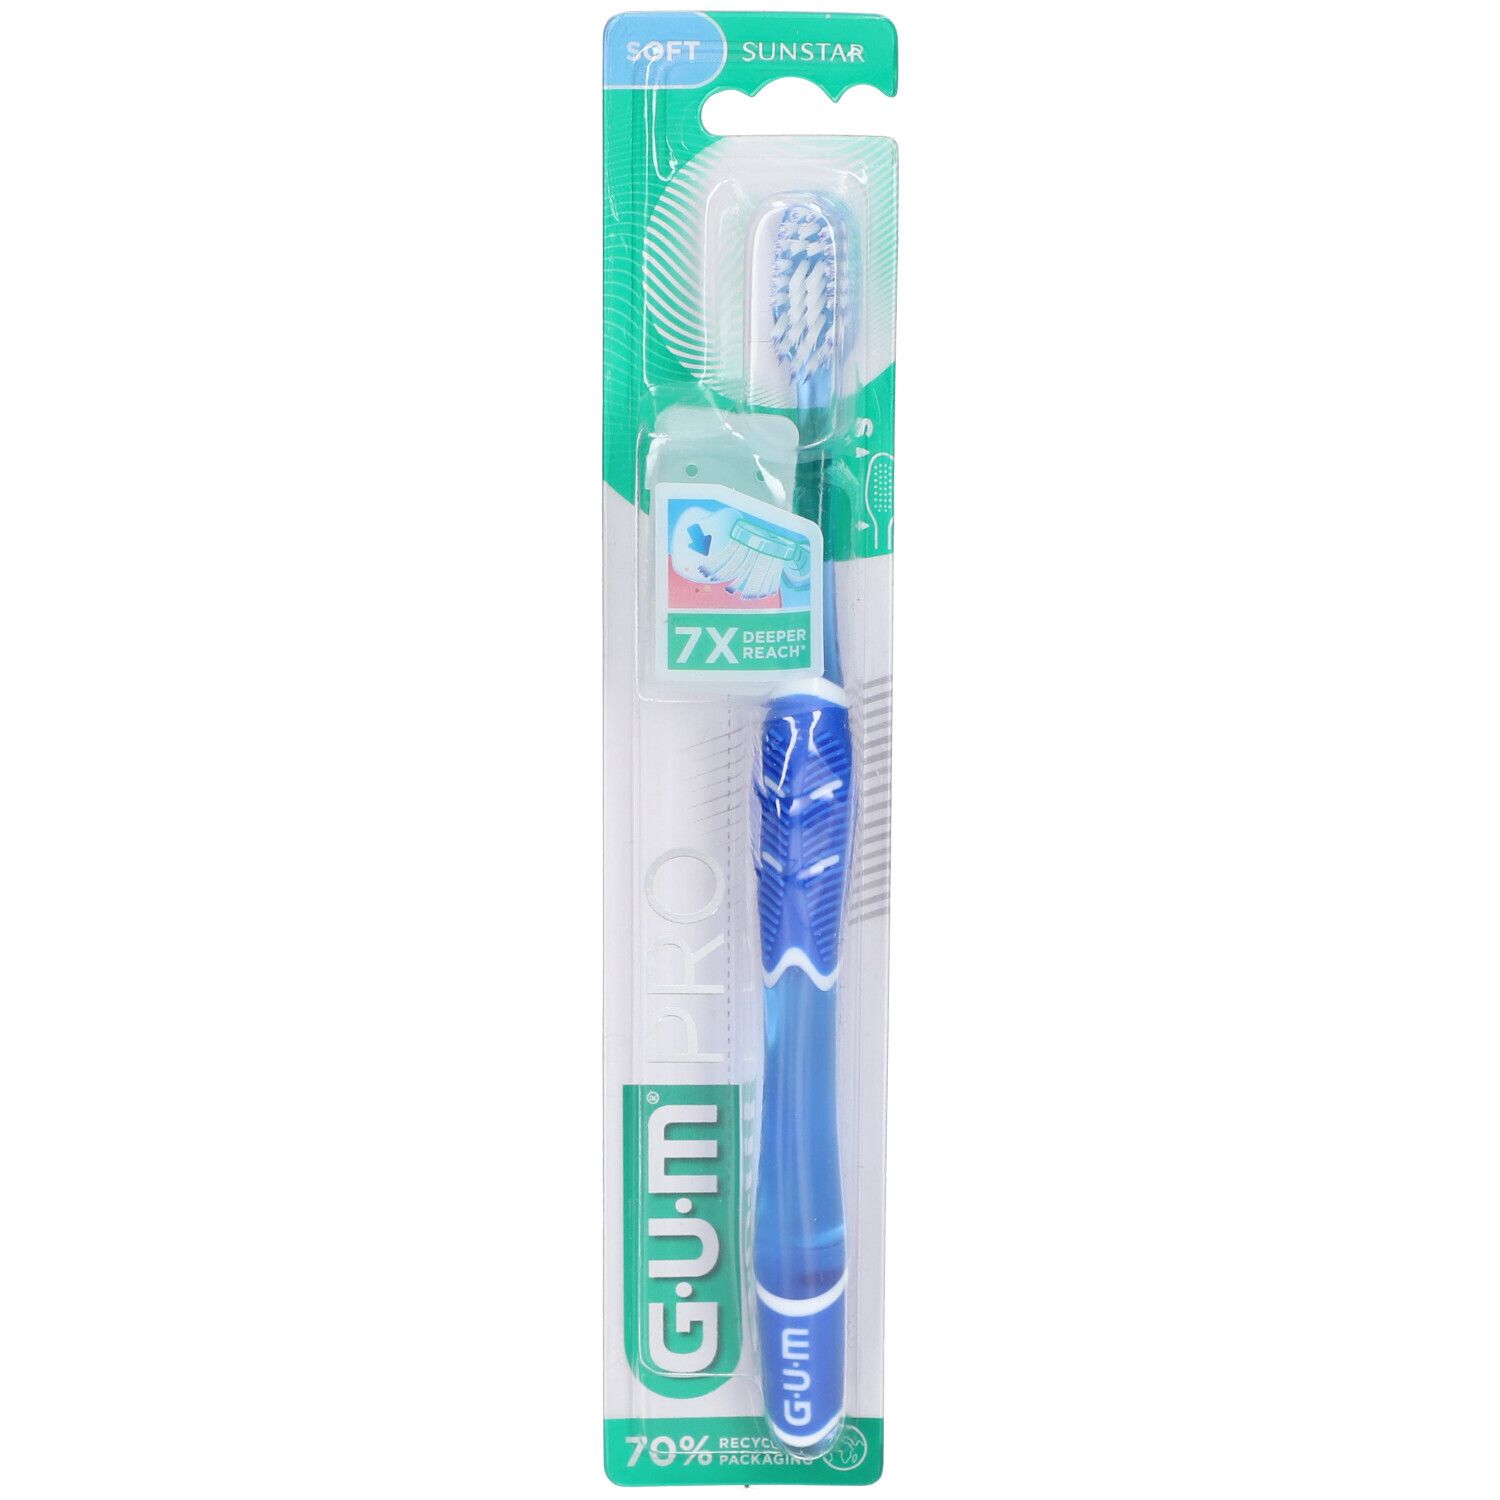 Gum® Technique pro brosse à dents adultes souple